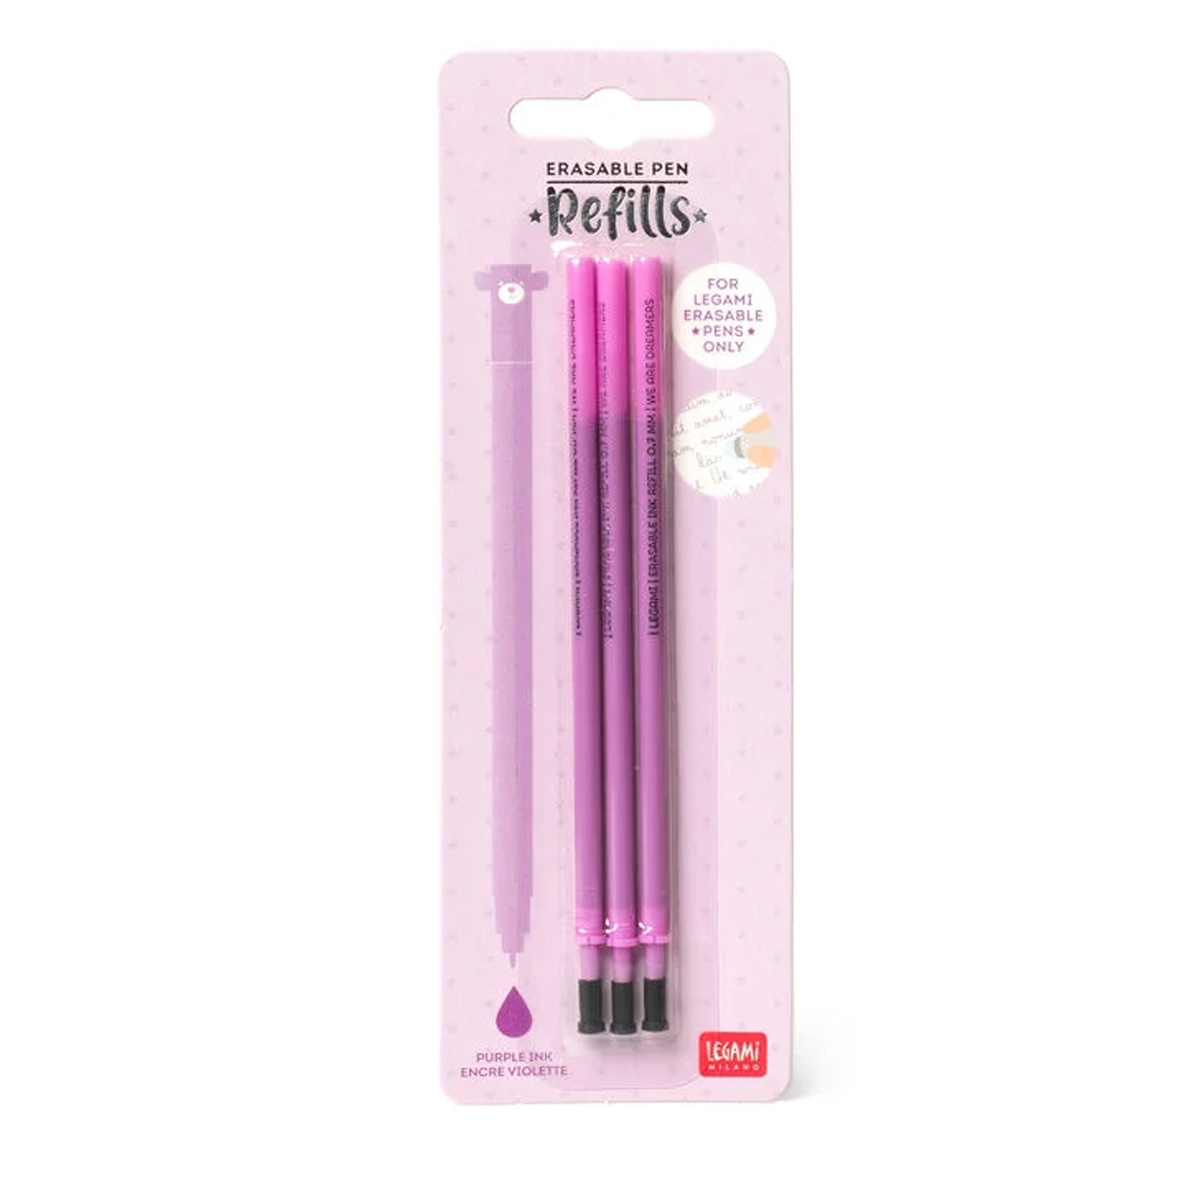 3 Ersatzminen für löschbaren Gelstift - Erasable Pen purple